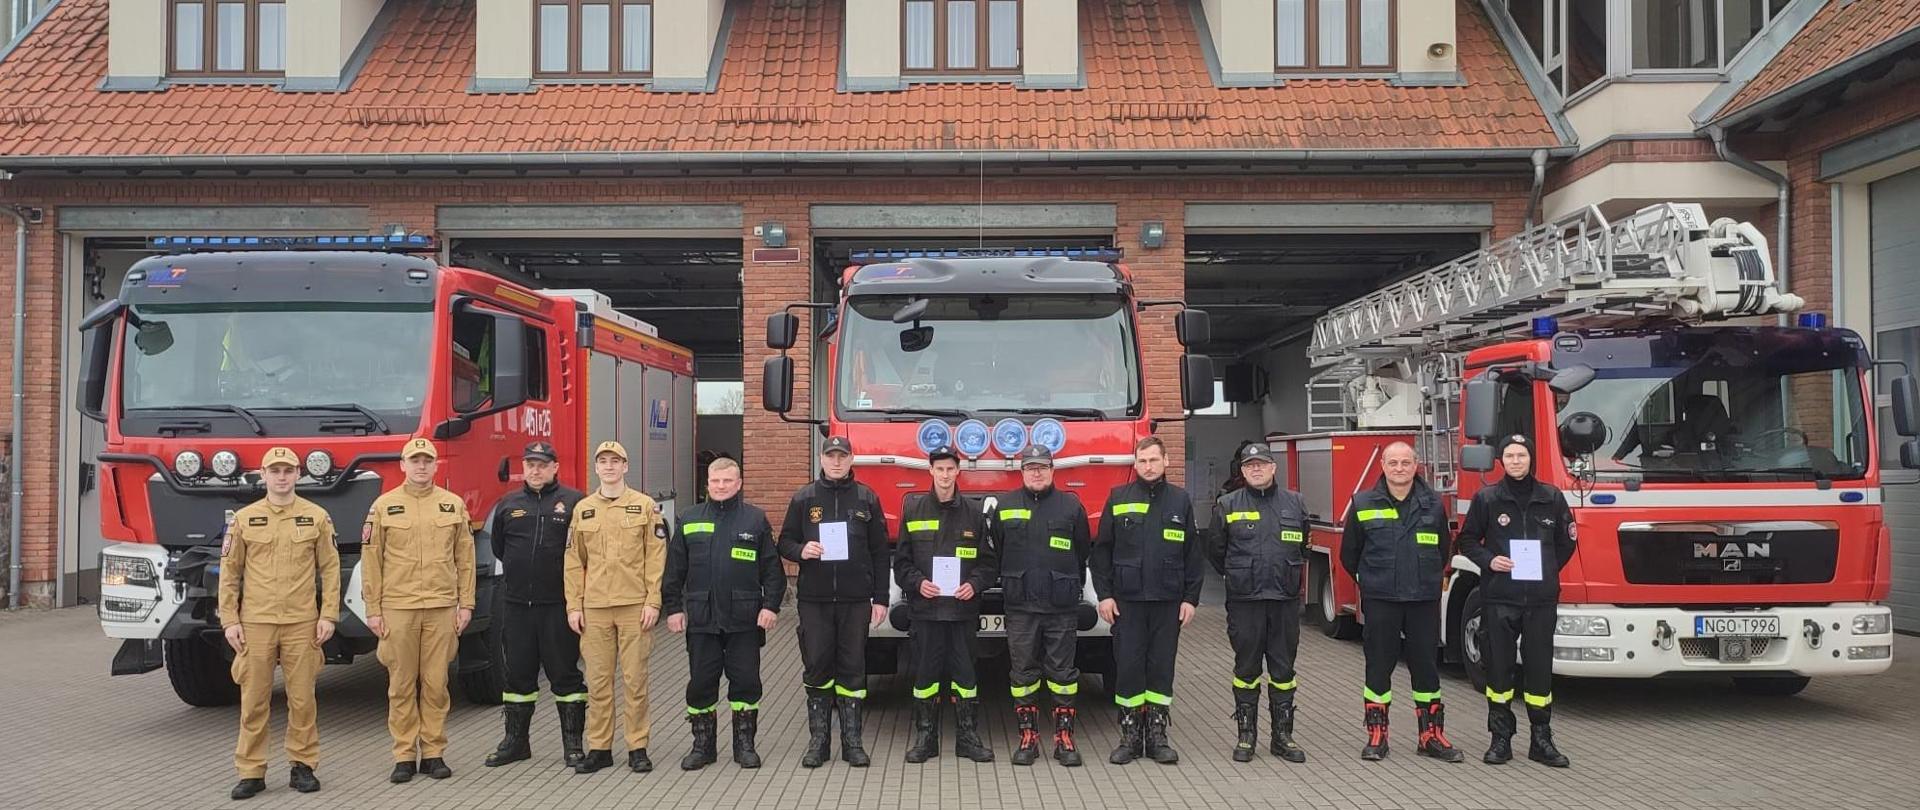 Zdjęcie przedstawia uczestników szkolenia kierującego działaniem ratowniczym dla strażaka ratownika Ochotniczych Straży Pożarnych (dowódcy OSP), realizowanego w Komedzie Powiatowej Państwowej Straży Pożarnej w Gołdapi, którzy wspólnie z komisją egzaminacyjną, stoją na tle pojazdów pożarniczych zlokalizowanych w garażach strażnicy